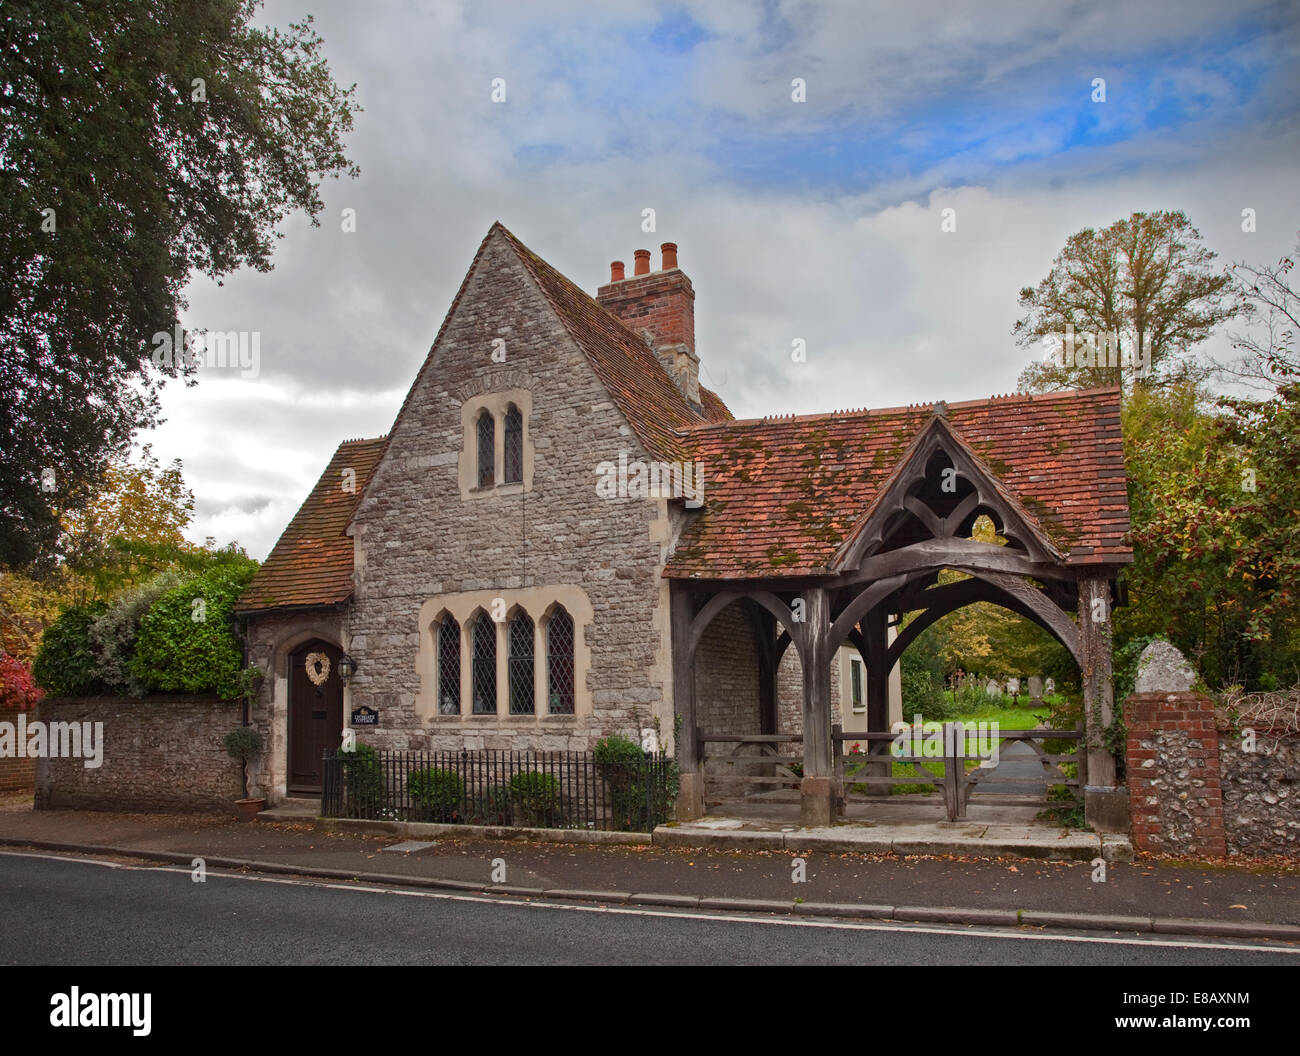 Lych Gate Cottage, Hursley, Hampshire, England Stock Photo